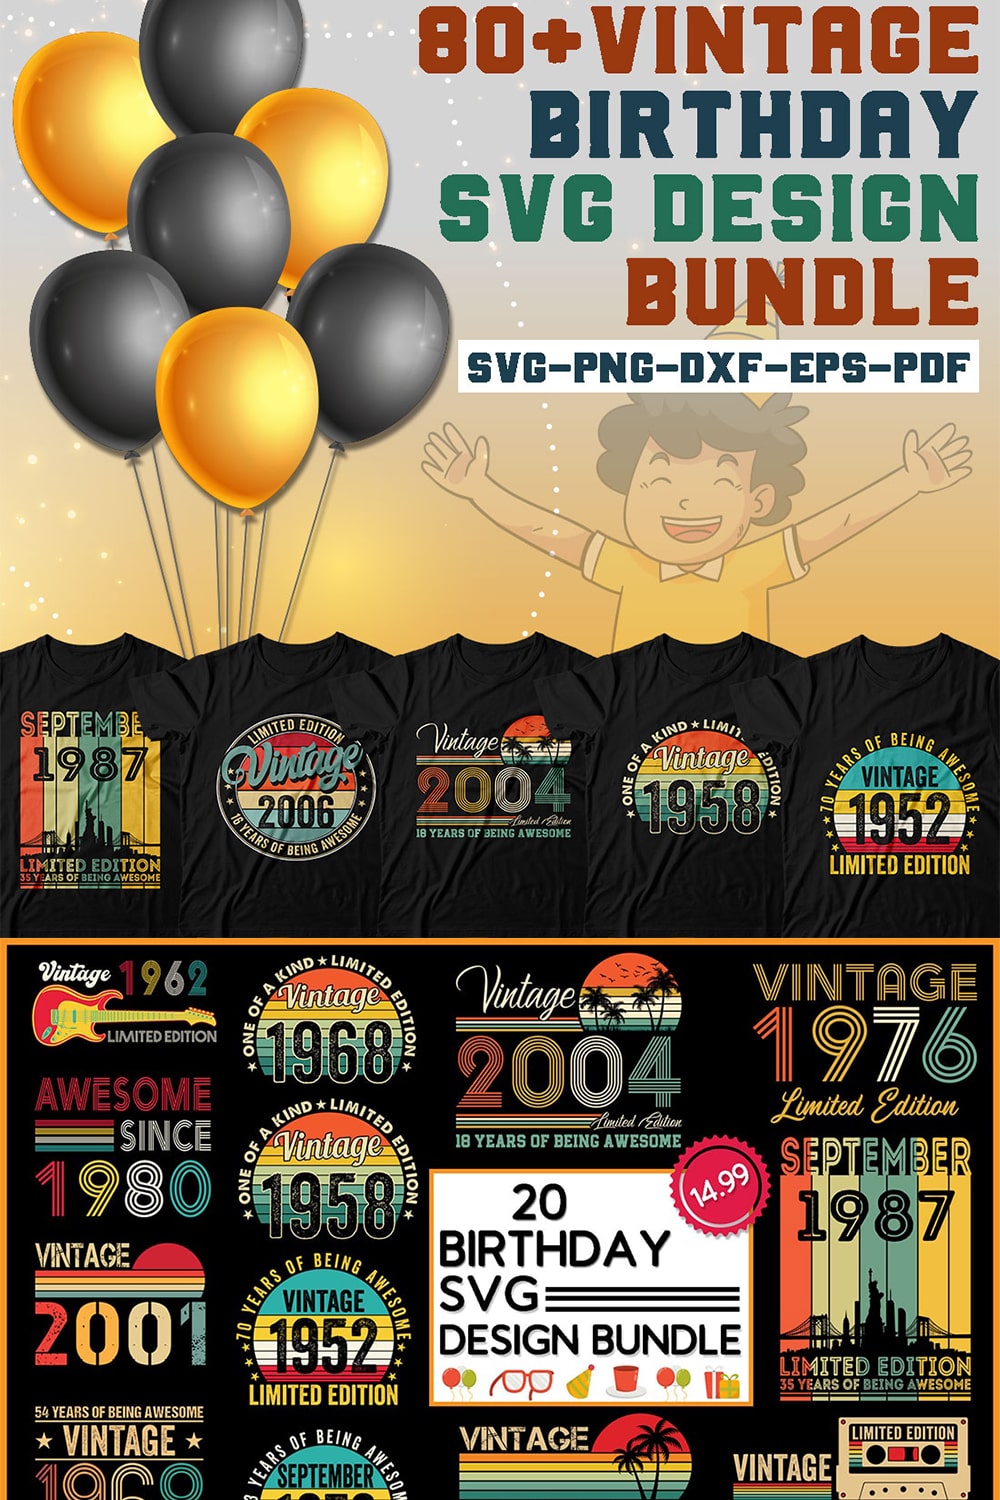 Vintage Birthday Svg Design Bundle pinterest preview image.